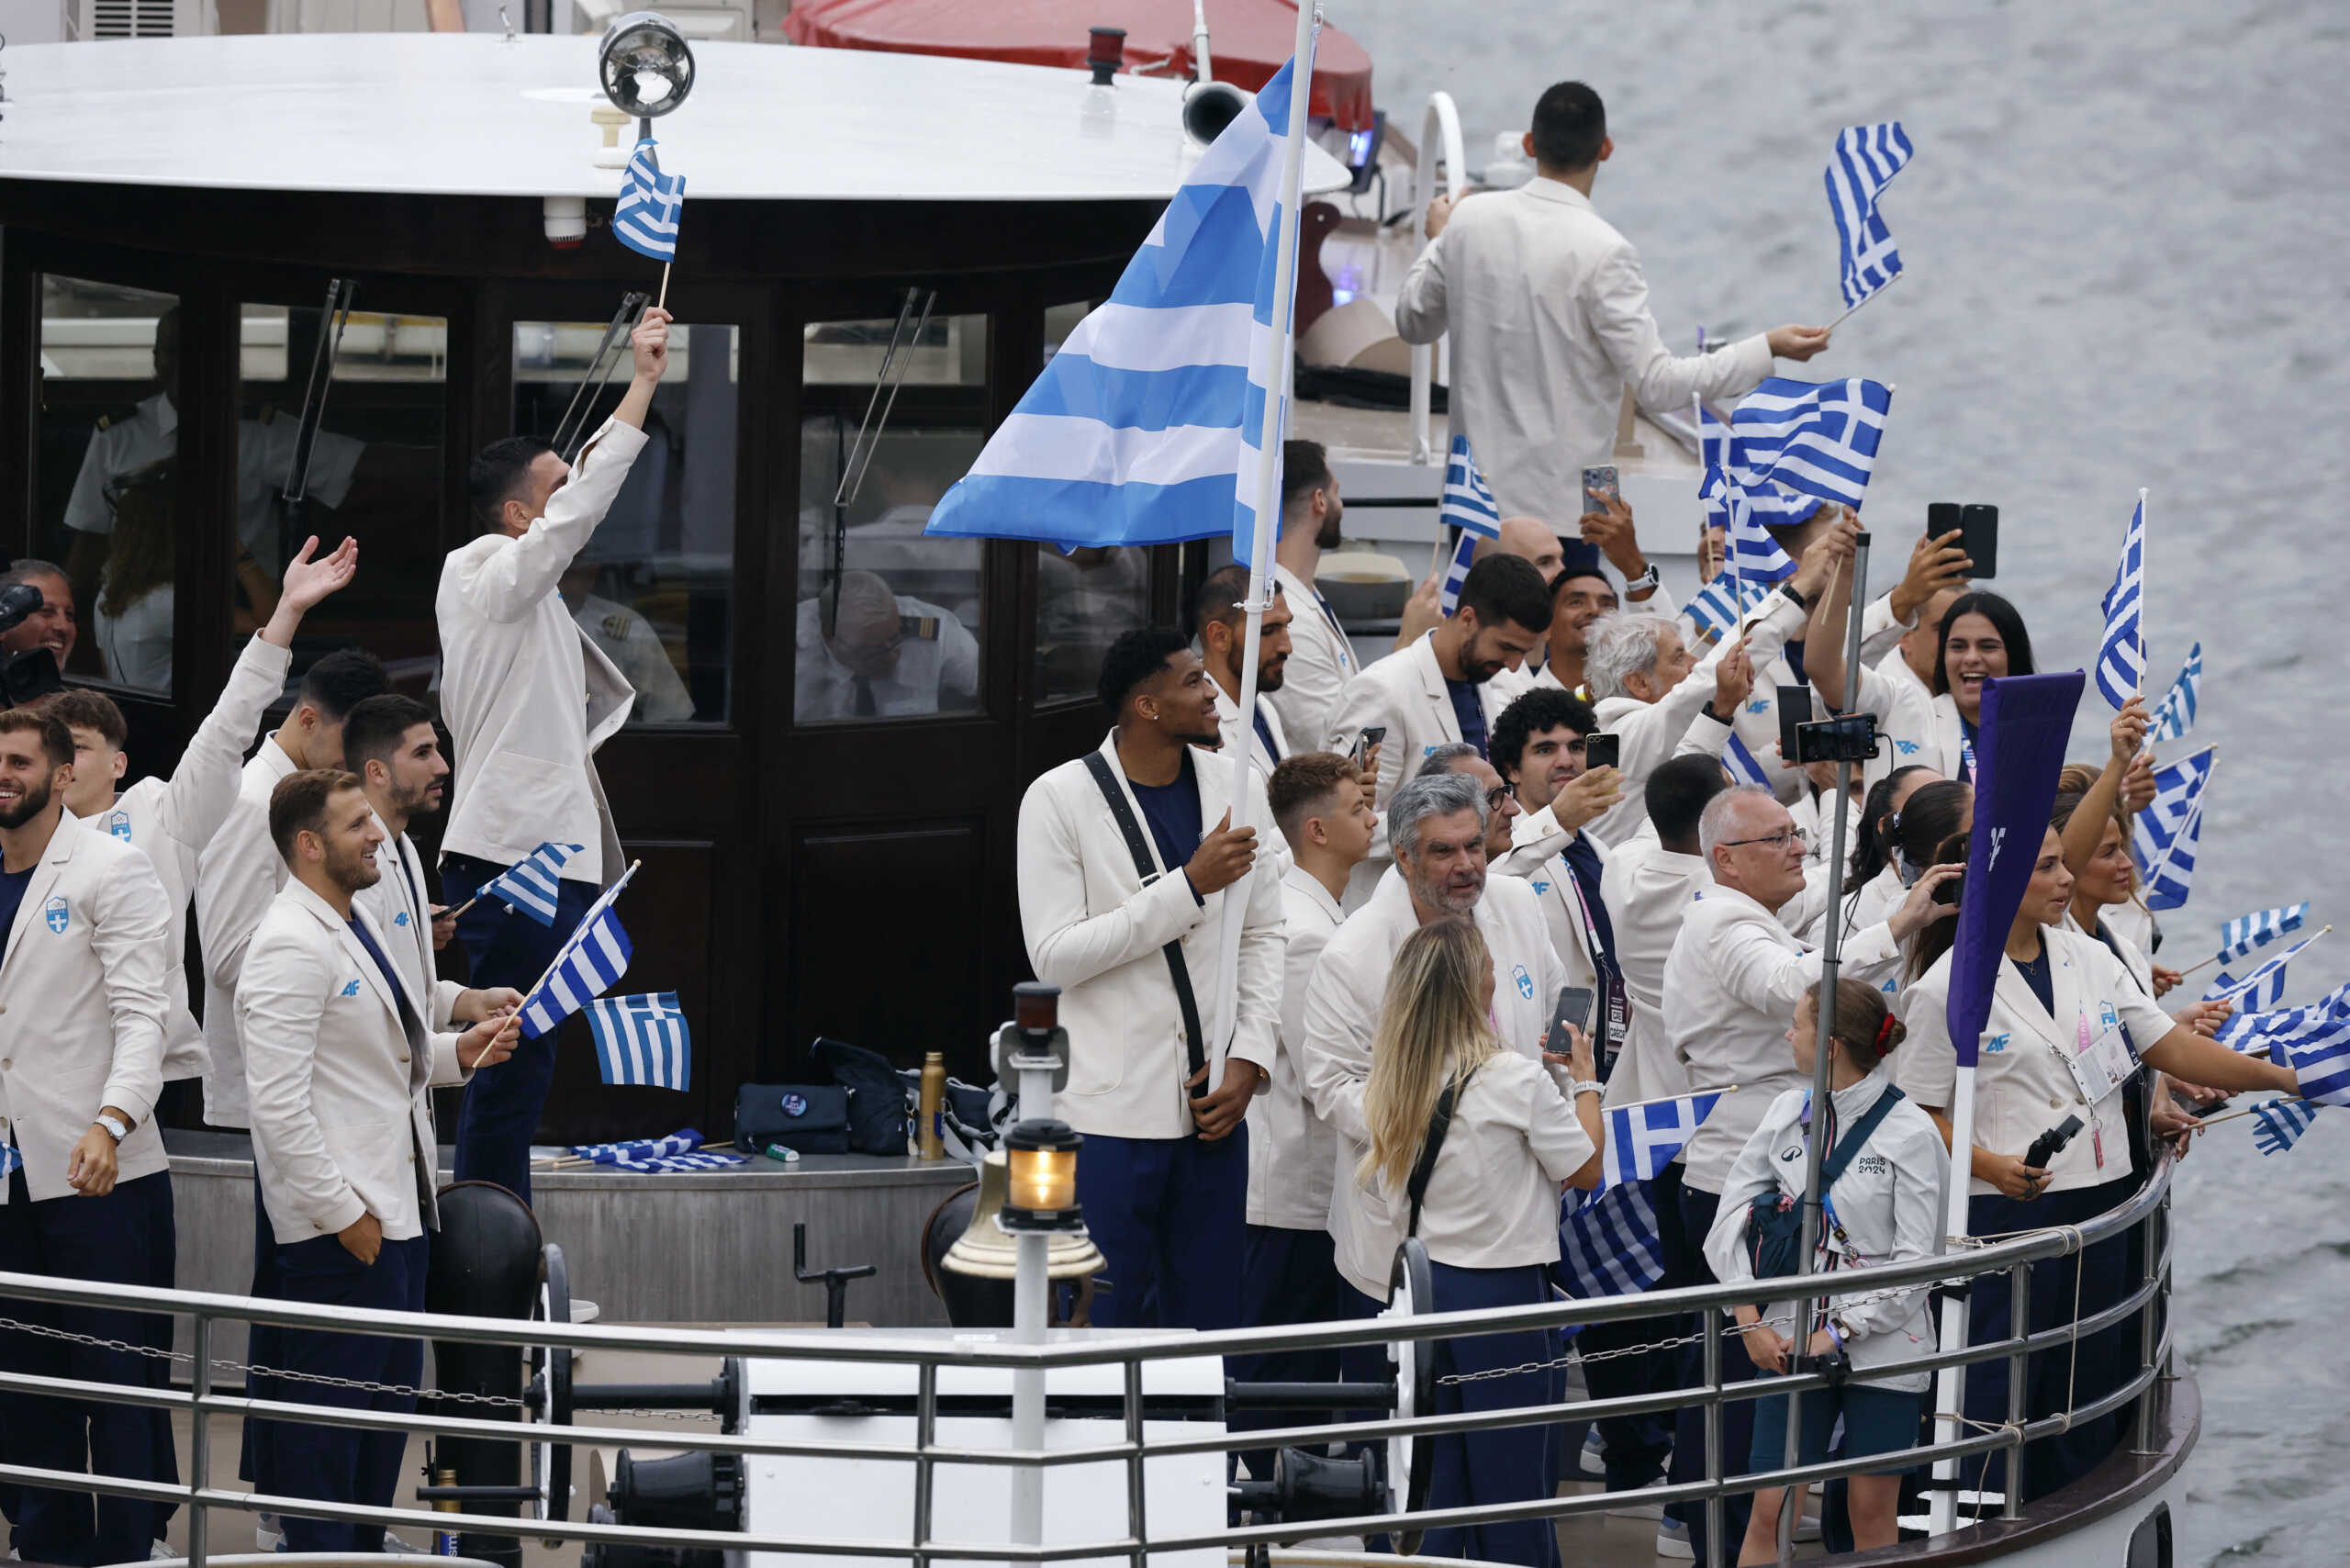 Τελετή έναρξης Ολυμπιακών Αγώνων: Η στιγμή της εισόδου των Αντετοκούνμπο – Ντρισμπιώτη και της ελληνικής αποστολής στον Σηκουάνα